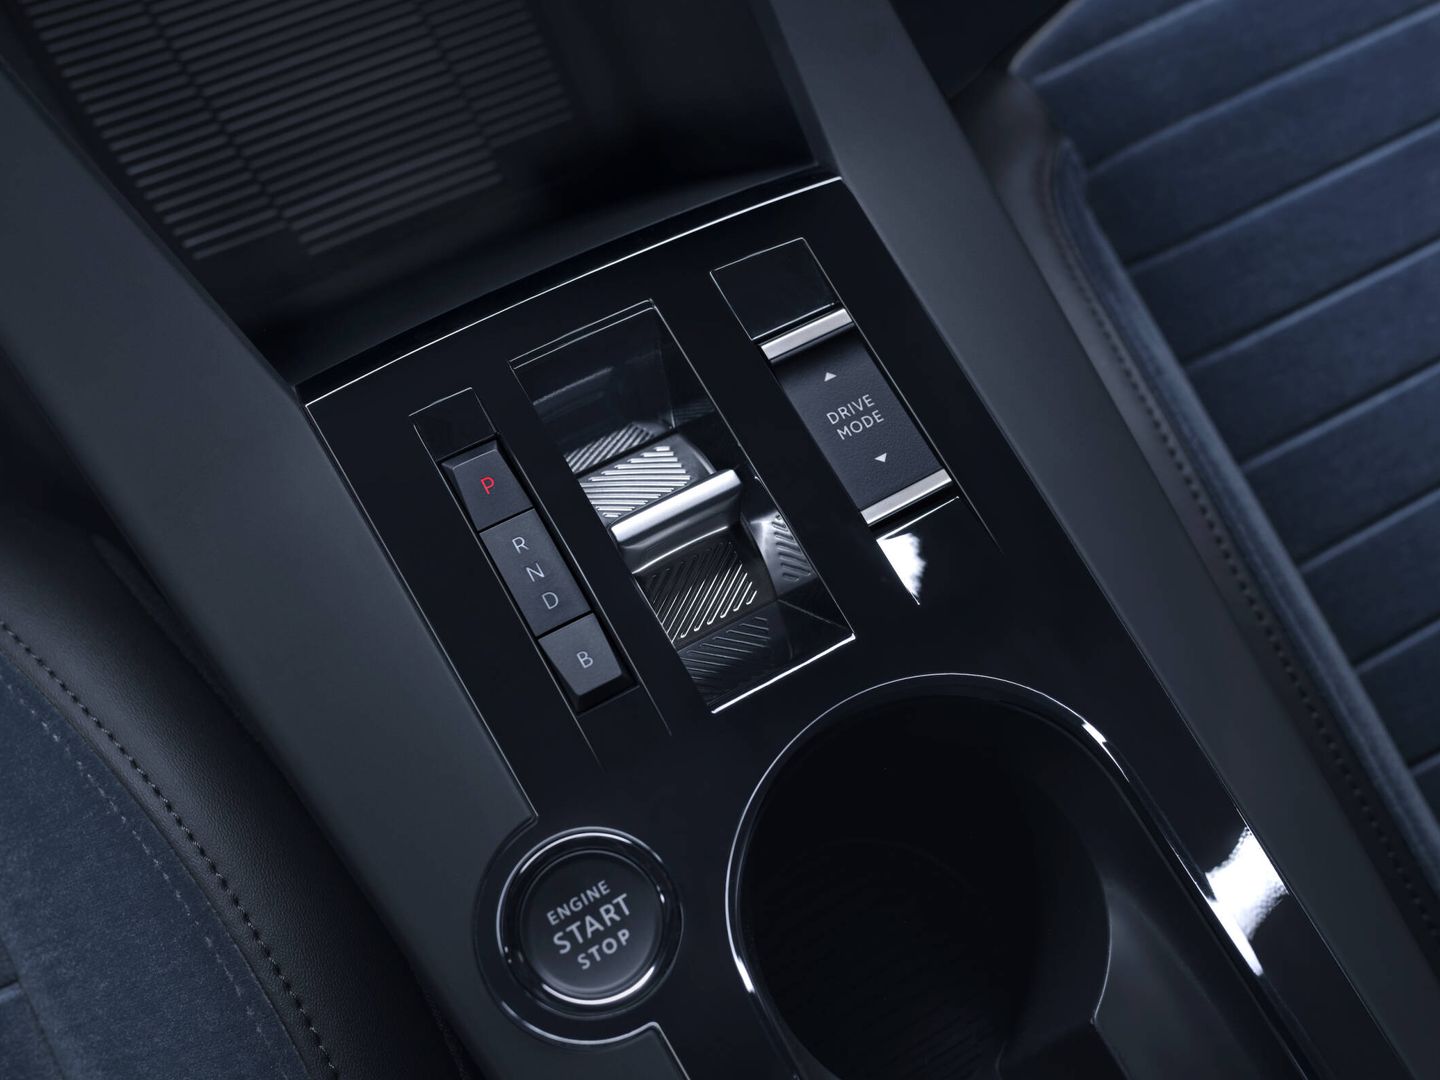 El mando del cambio y el de los modos de conducción son comunes a los de otros coches de Stellantis.